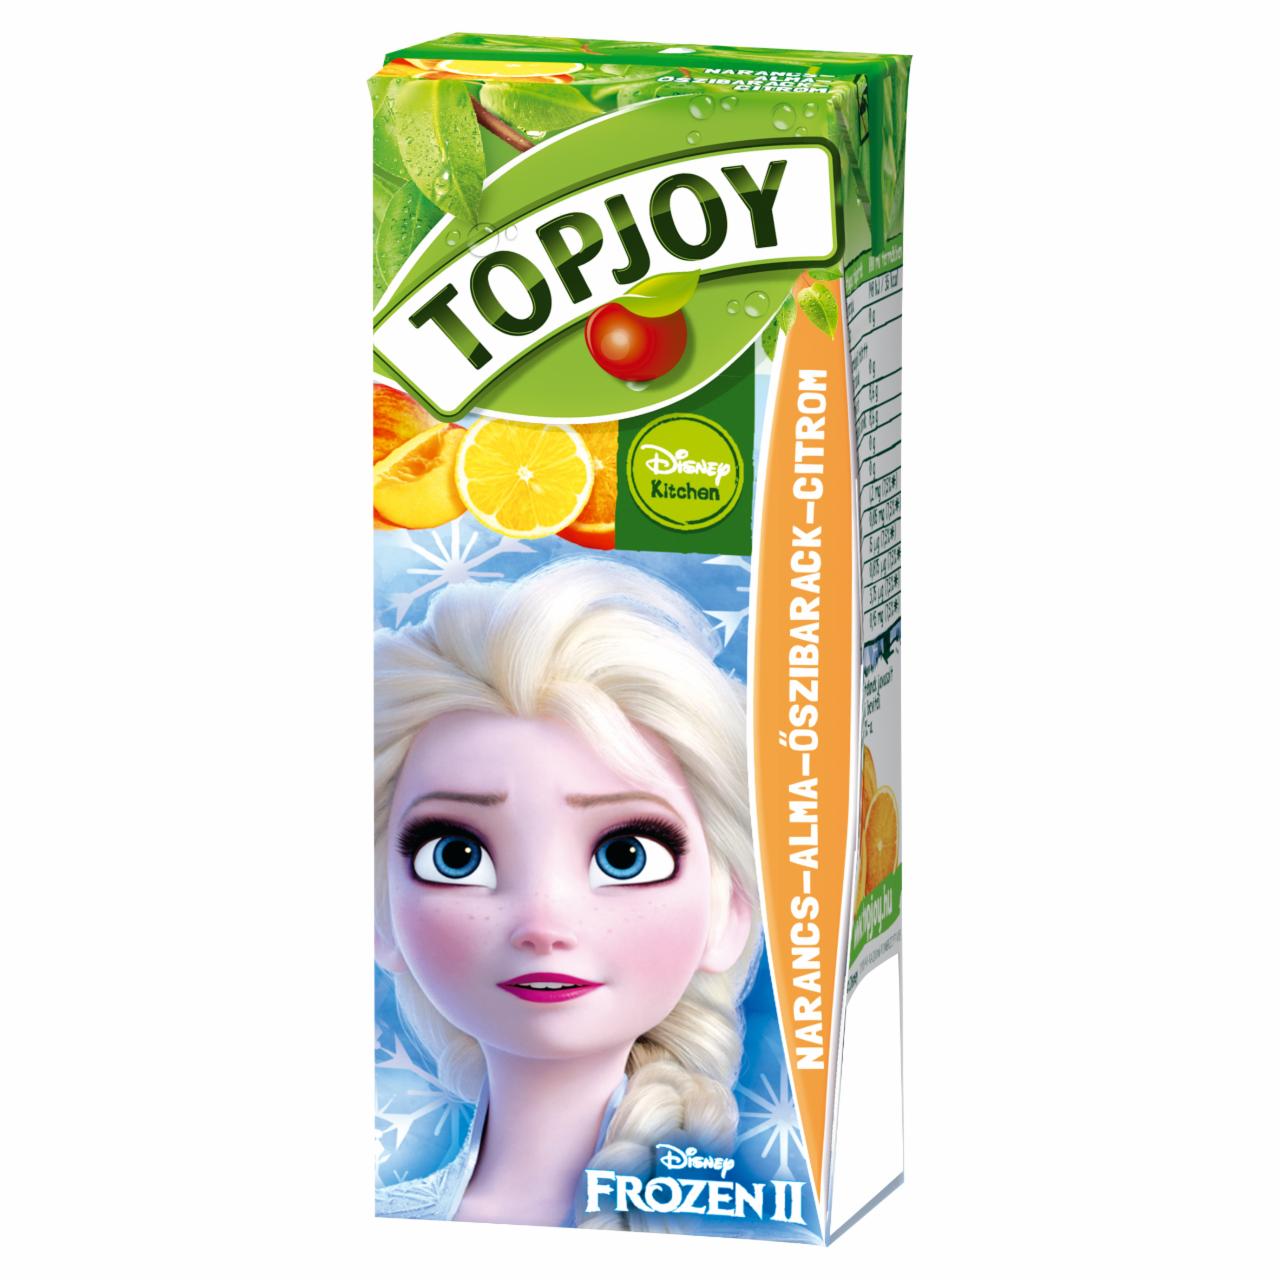 Képek - Topjoy narancs-alma-őszibarack-citrom ital 200 ml